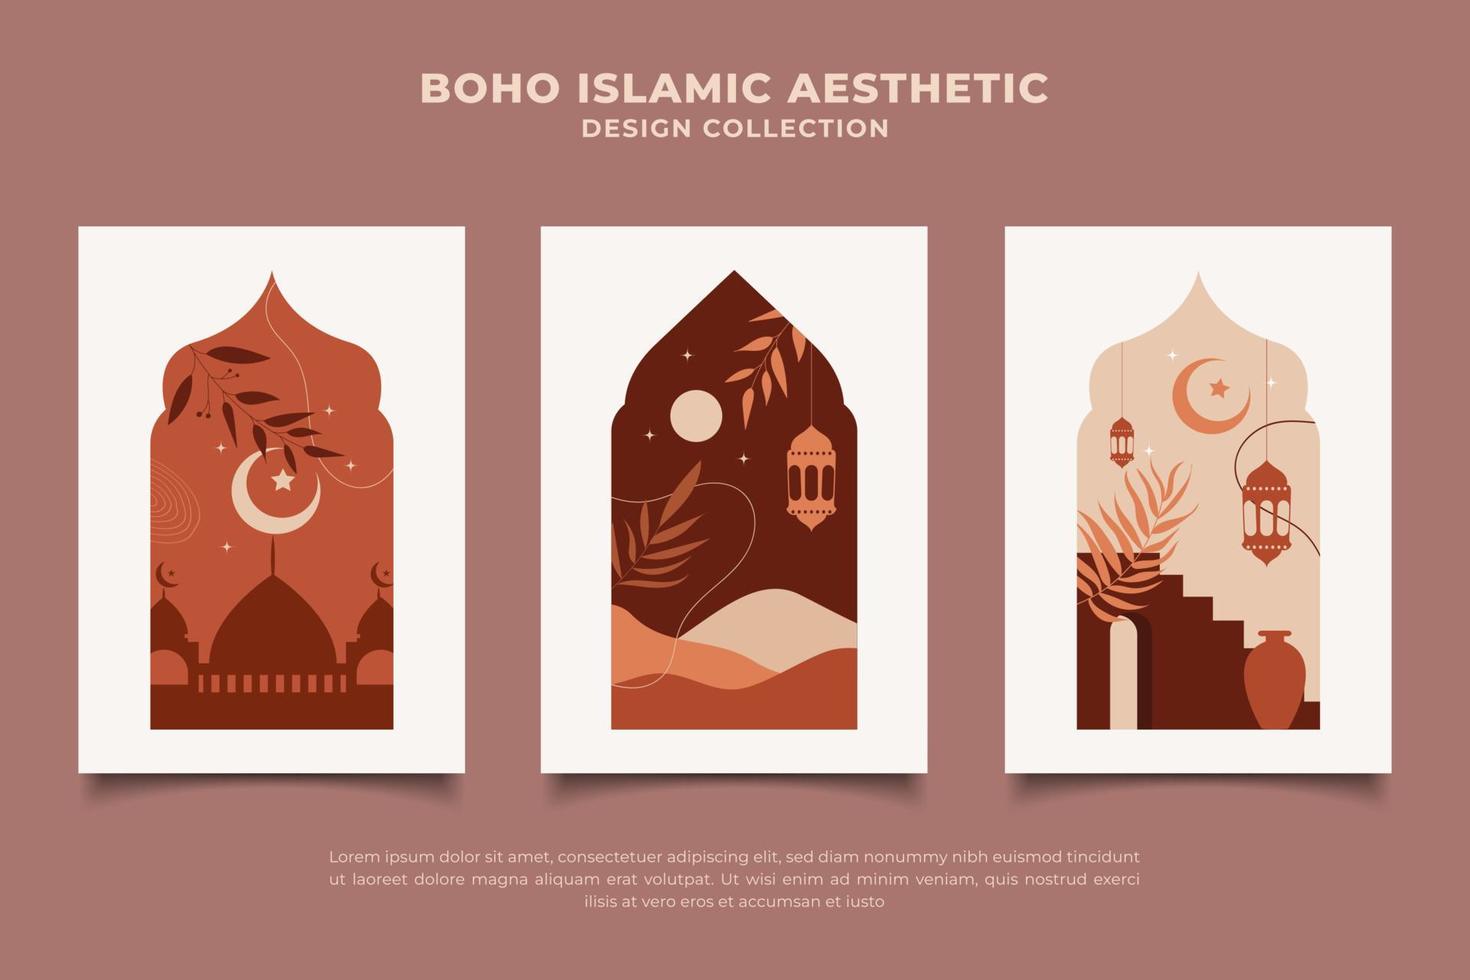 diseño minimalista estético islámico abstracto boho vector